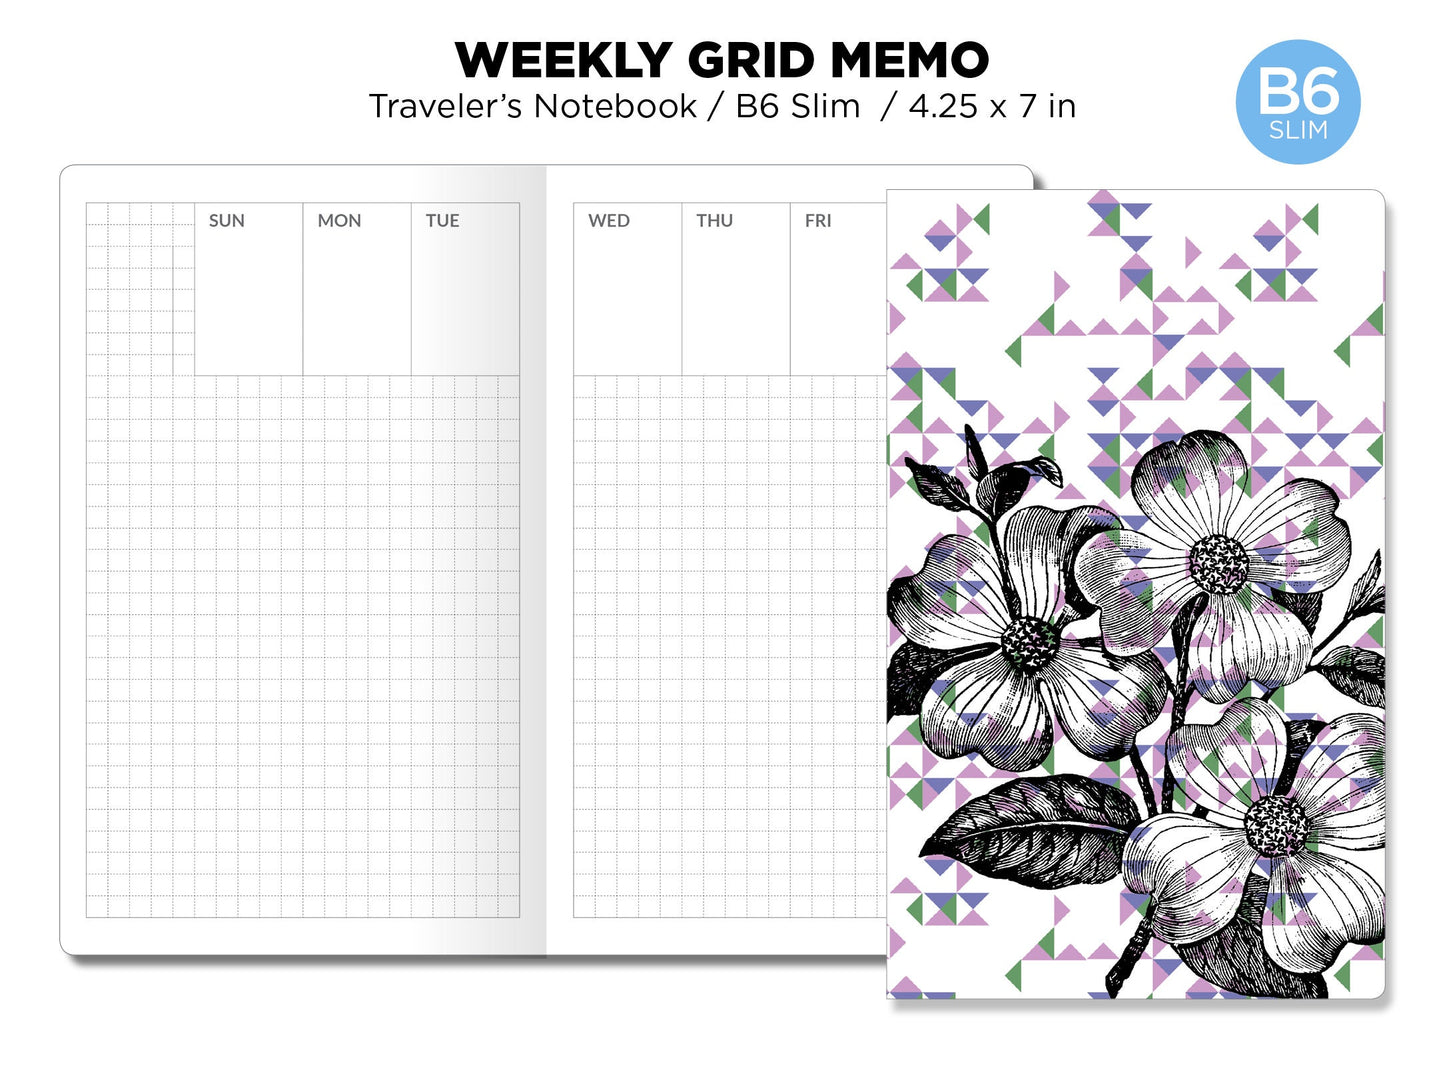 B6 SLIM Weekly Memo Grid Printable TN Insert Traveler's Notebook